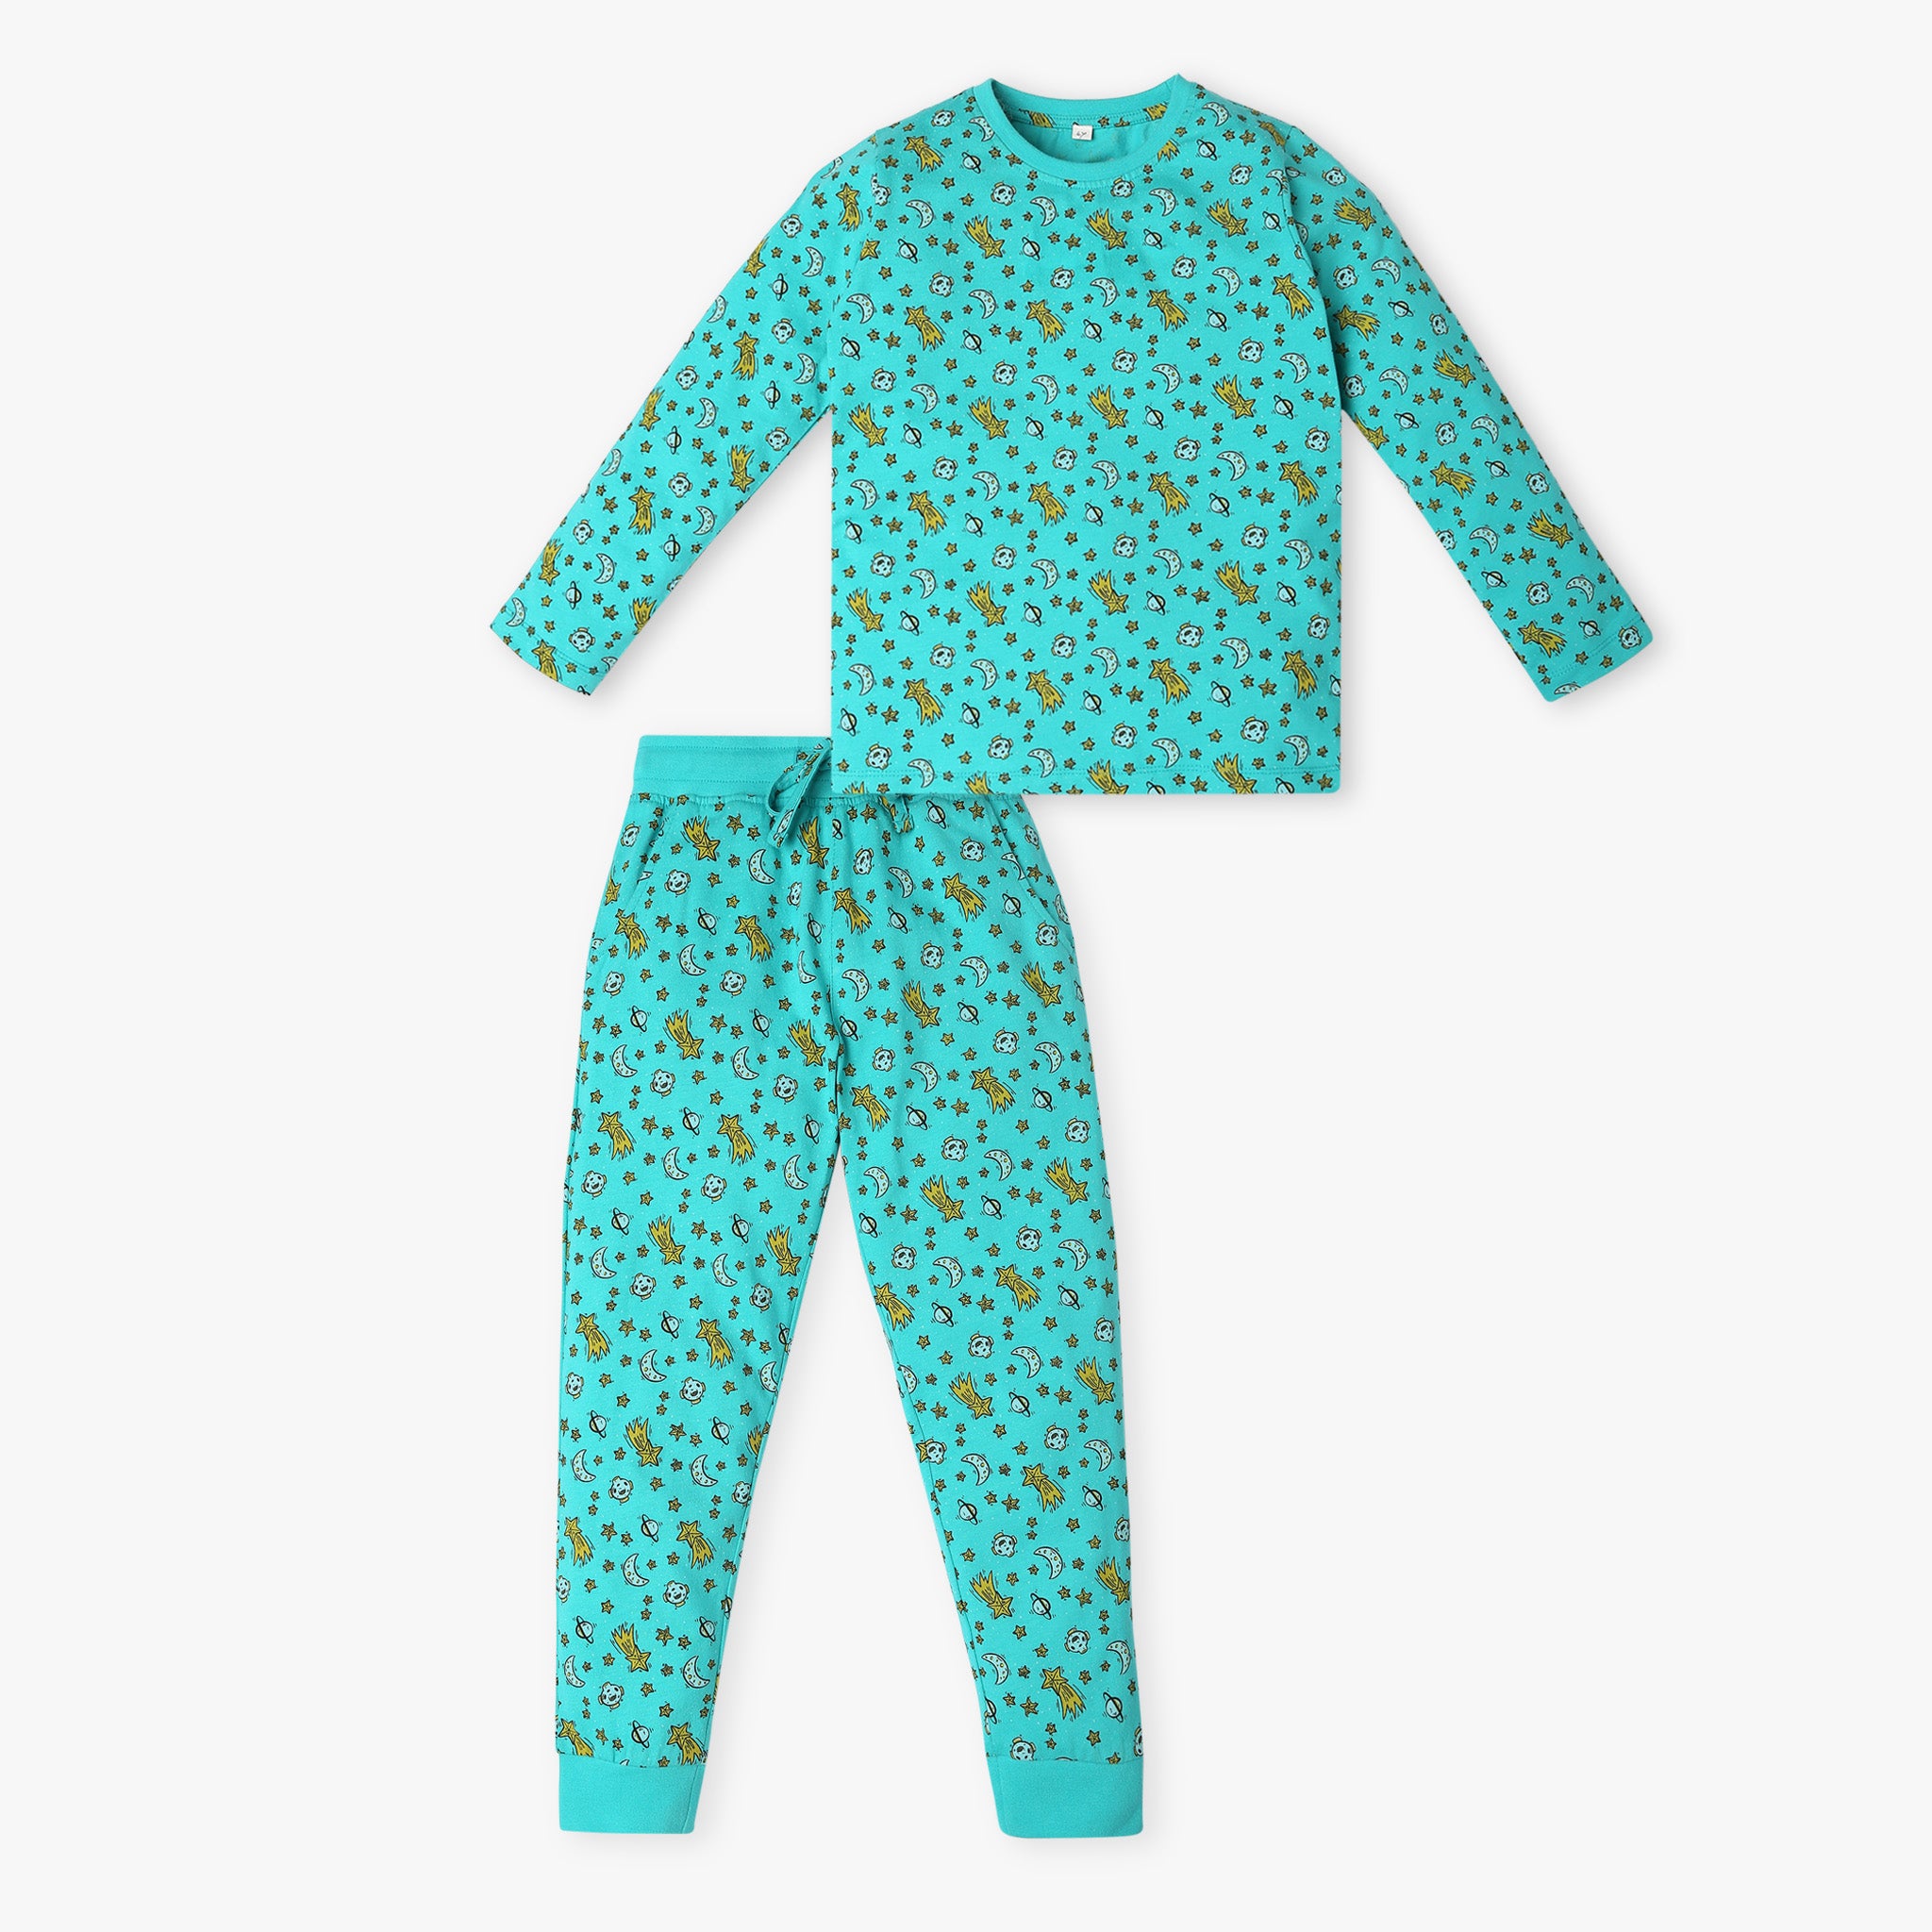 Boy's Regular Fit Printed Sleepwear Set